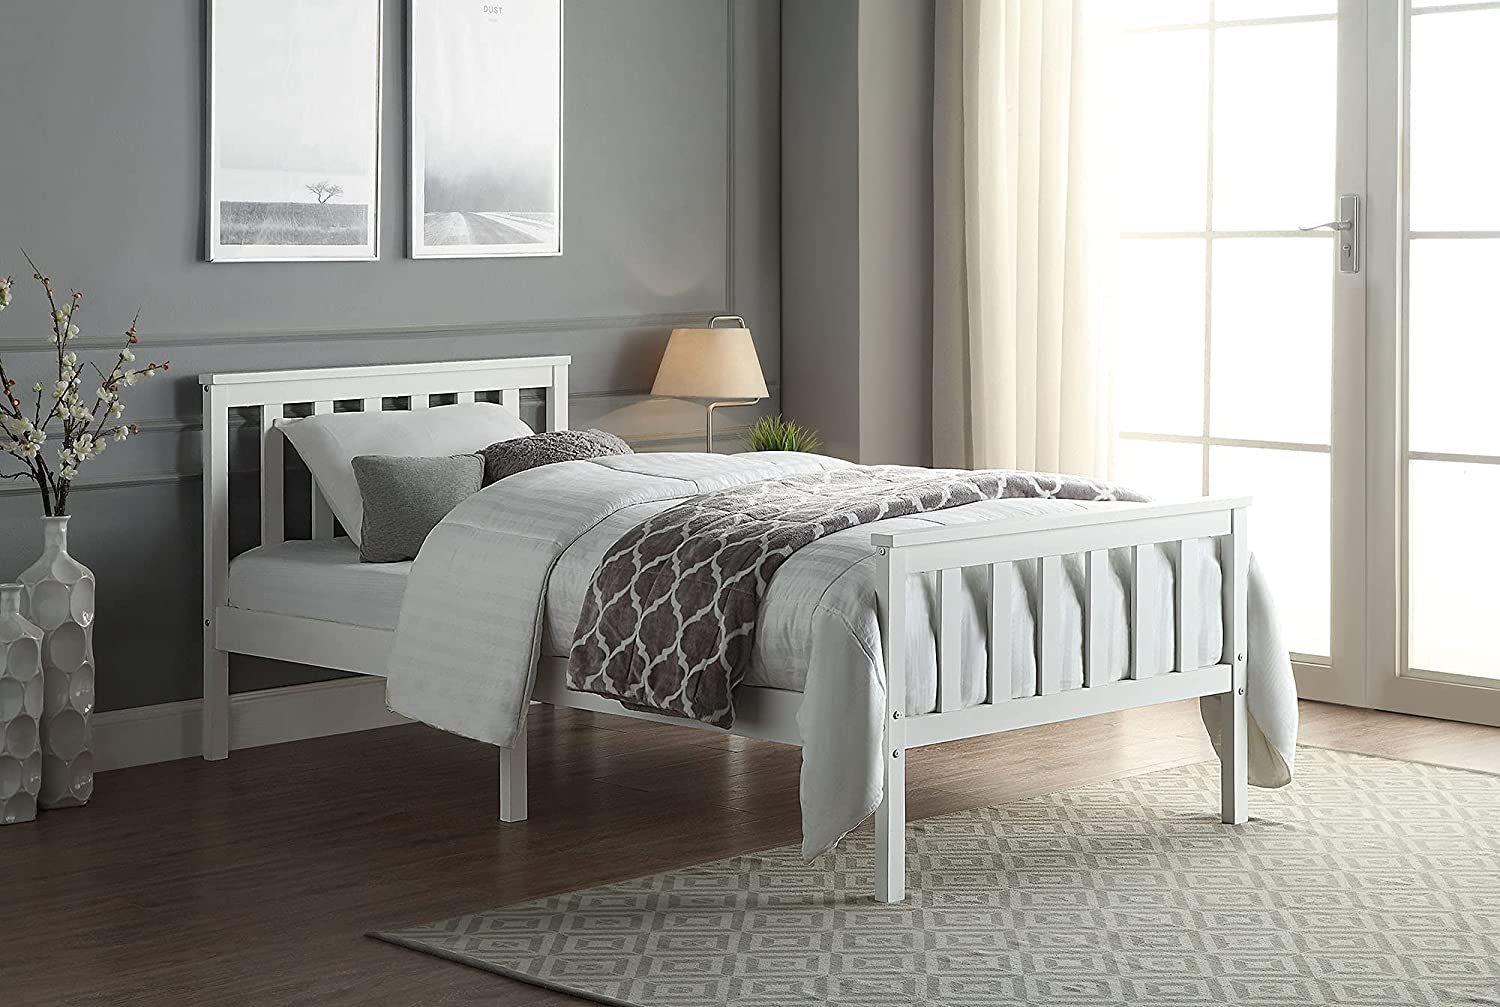 Wooden Bed Frame 3FT For Adult & Children